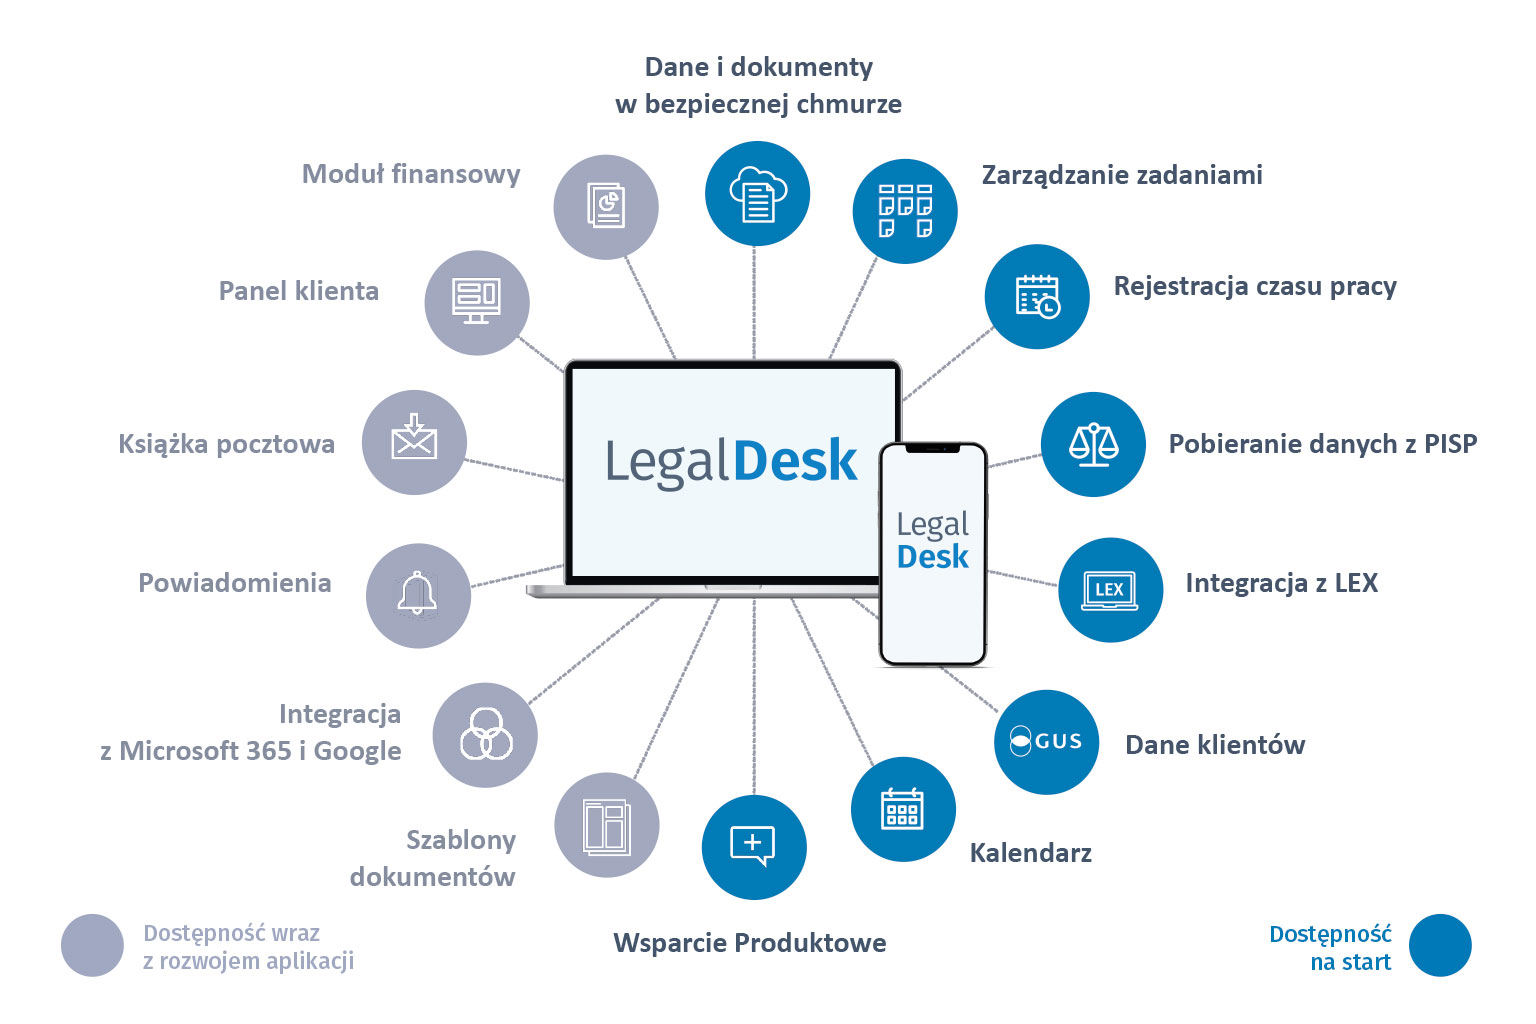 LegalDesk - Kompletne środowisko pracy dzięki integracji z PISP, LEX i GUS